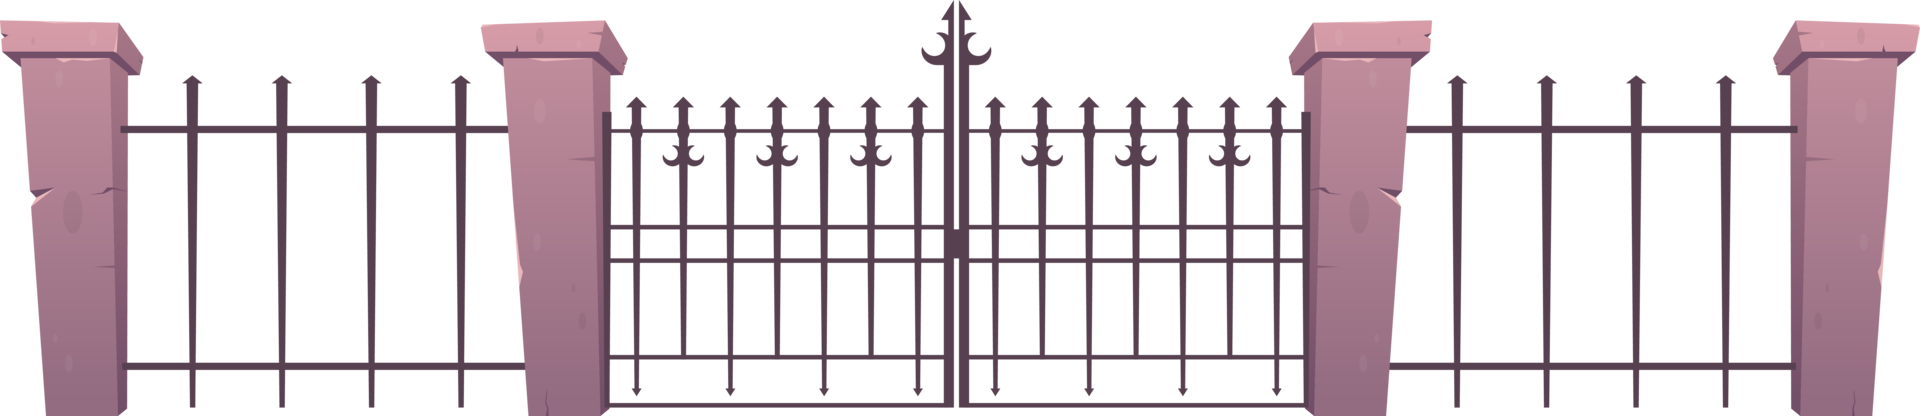 entrée clôture fabriqué de acier et béton dans dessin animé style png